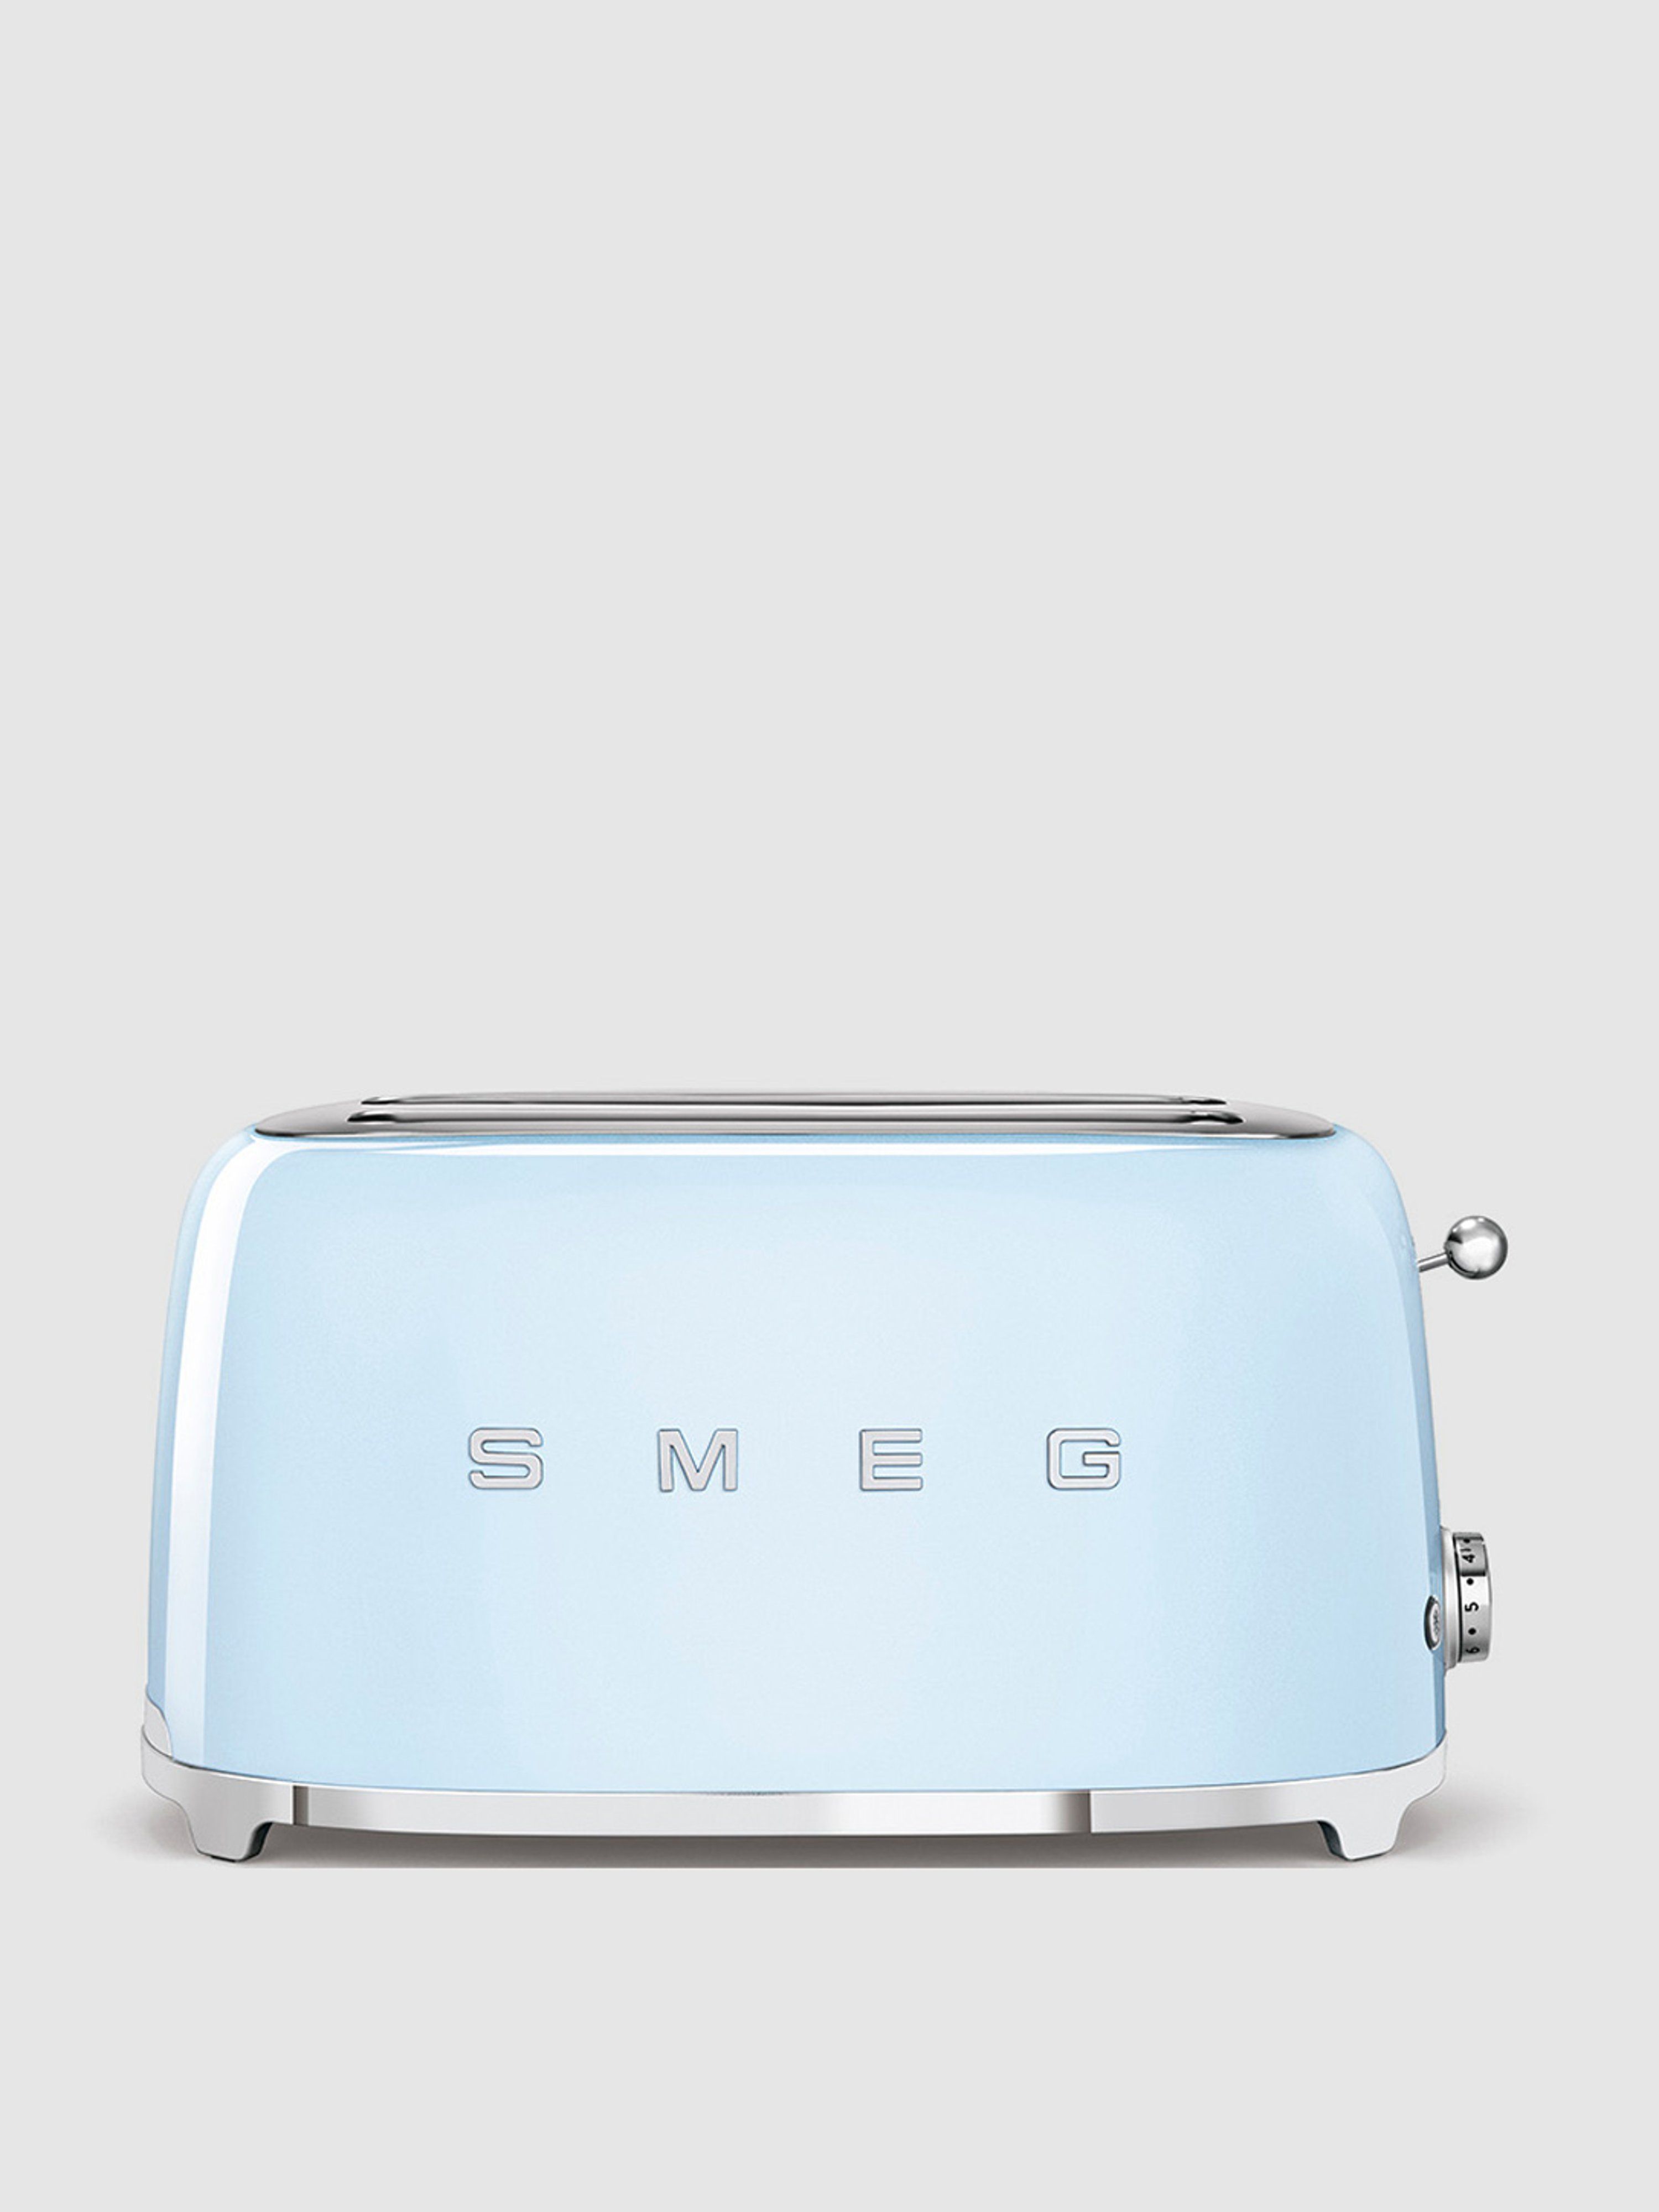 4-Slice Toaster | Verishop